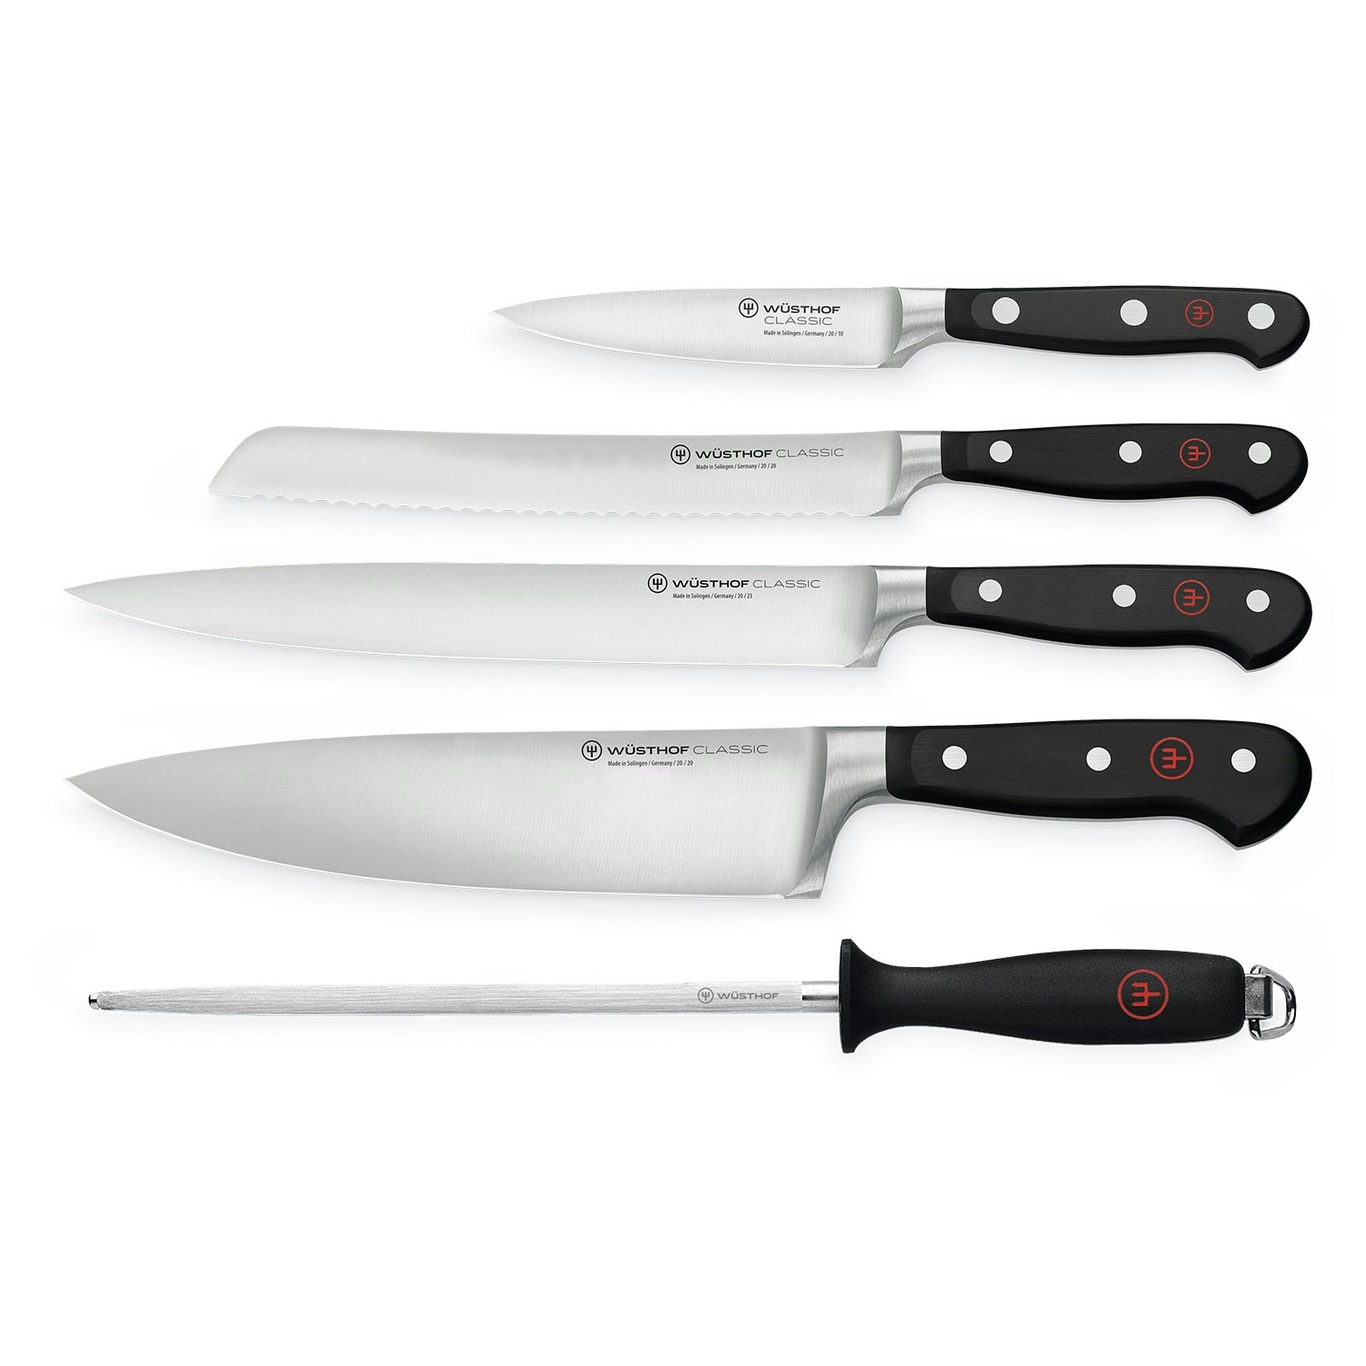 https://royaldesign.com/image/11/wusthof-classic-knife-set-5-pack-0?w=800&quality=80